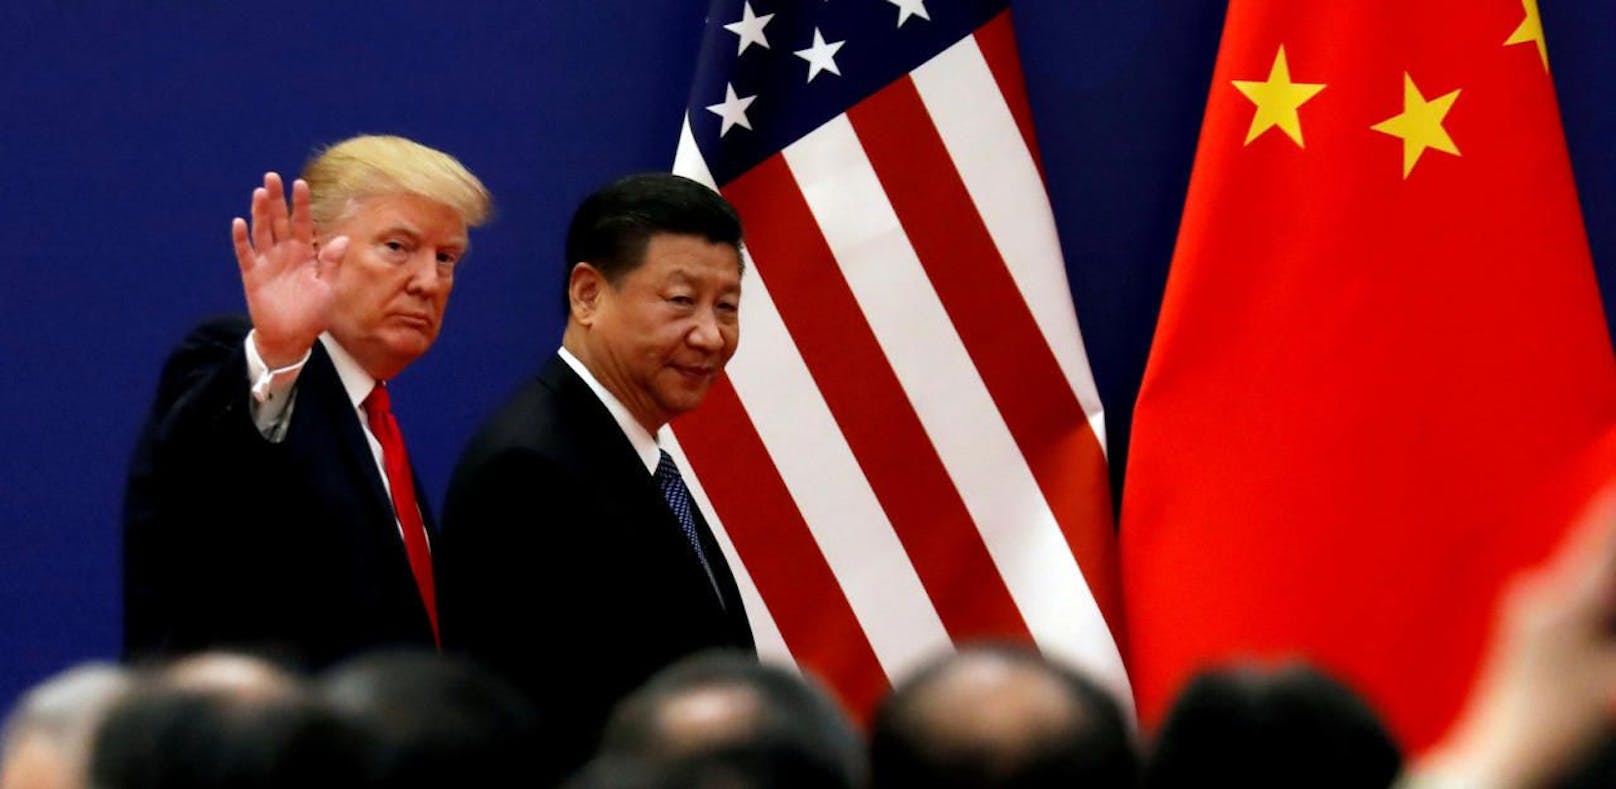 Donald Trump und Xi Jinping bei einem ihrer früheren Treffen